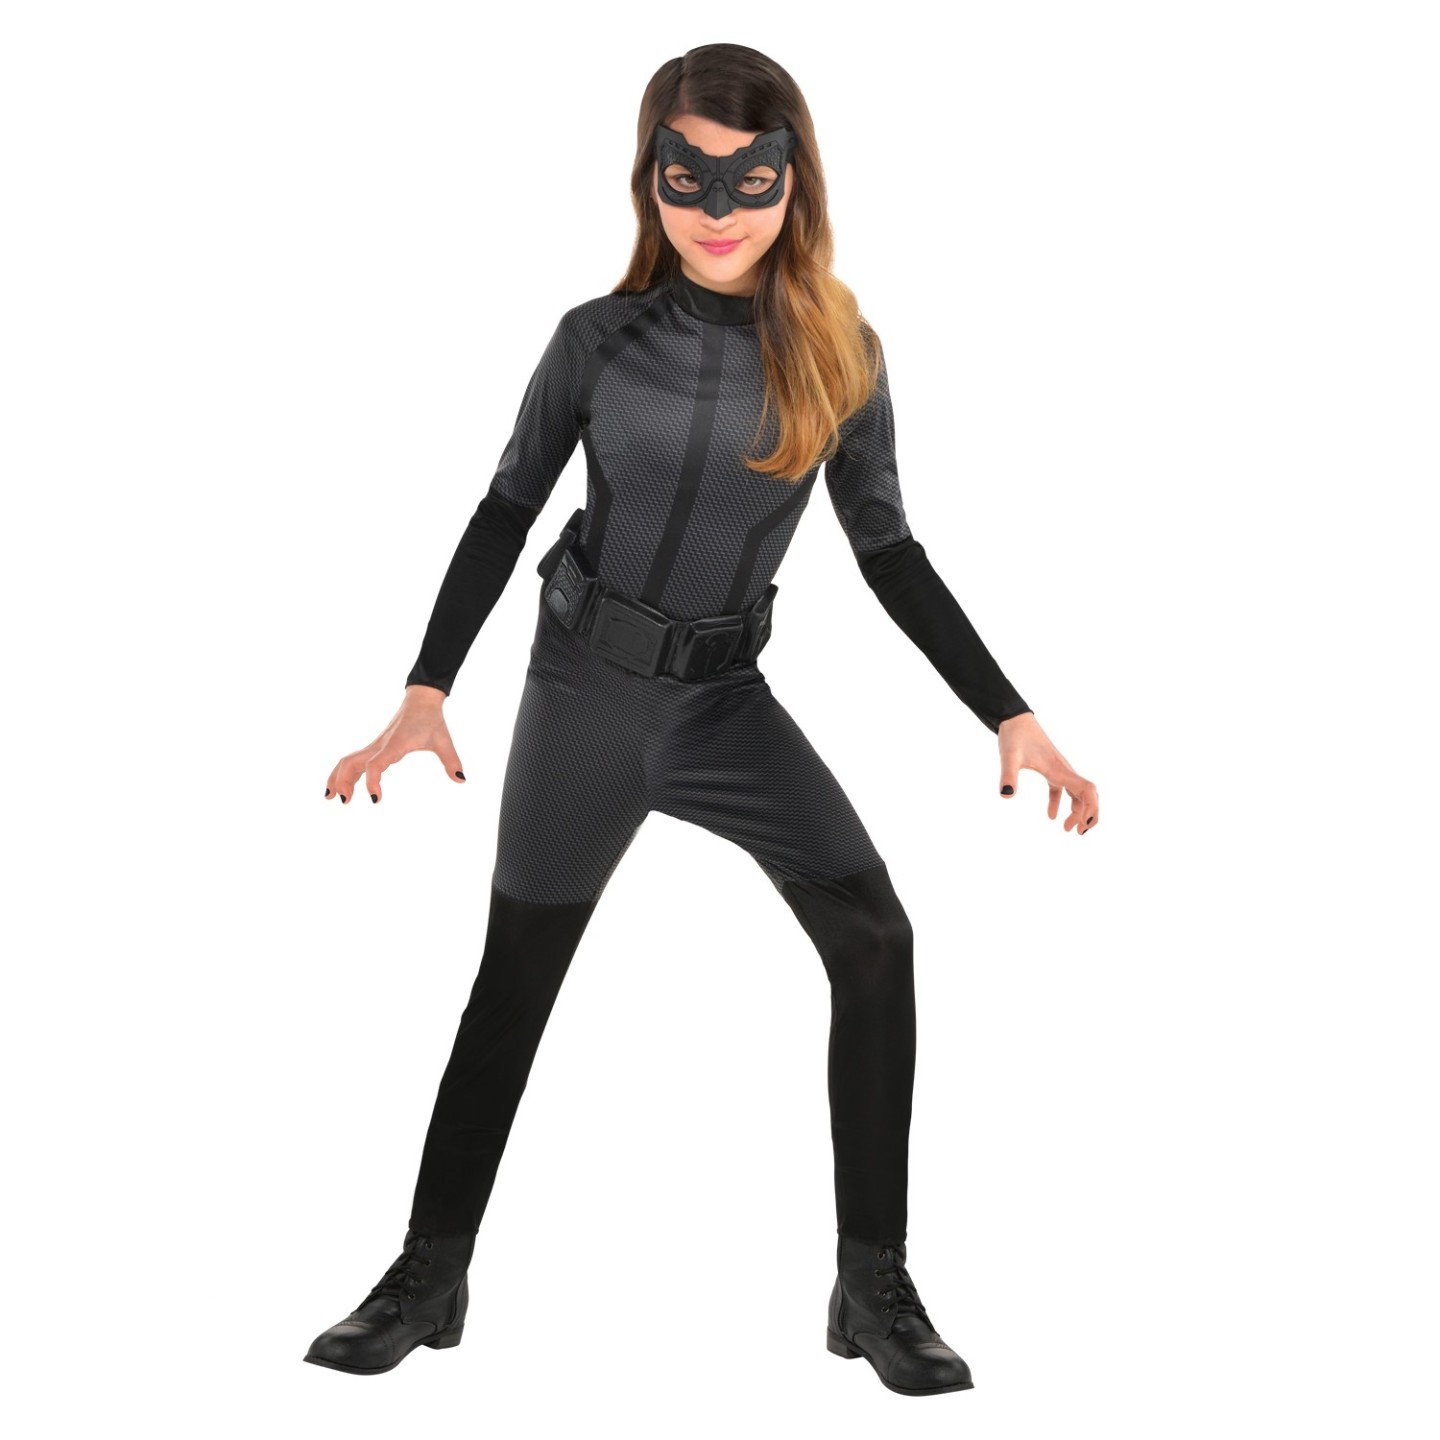 links Ver weg hemel Catwoman kostuum voor kind kopen ? | Jokershop Superhelden kleding